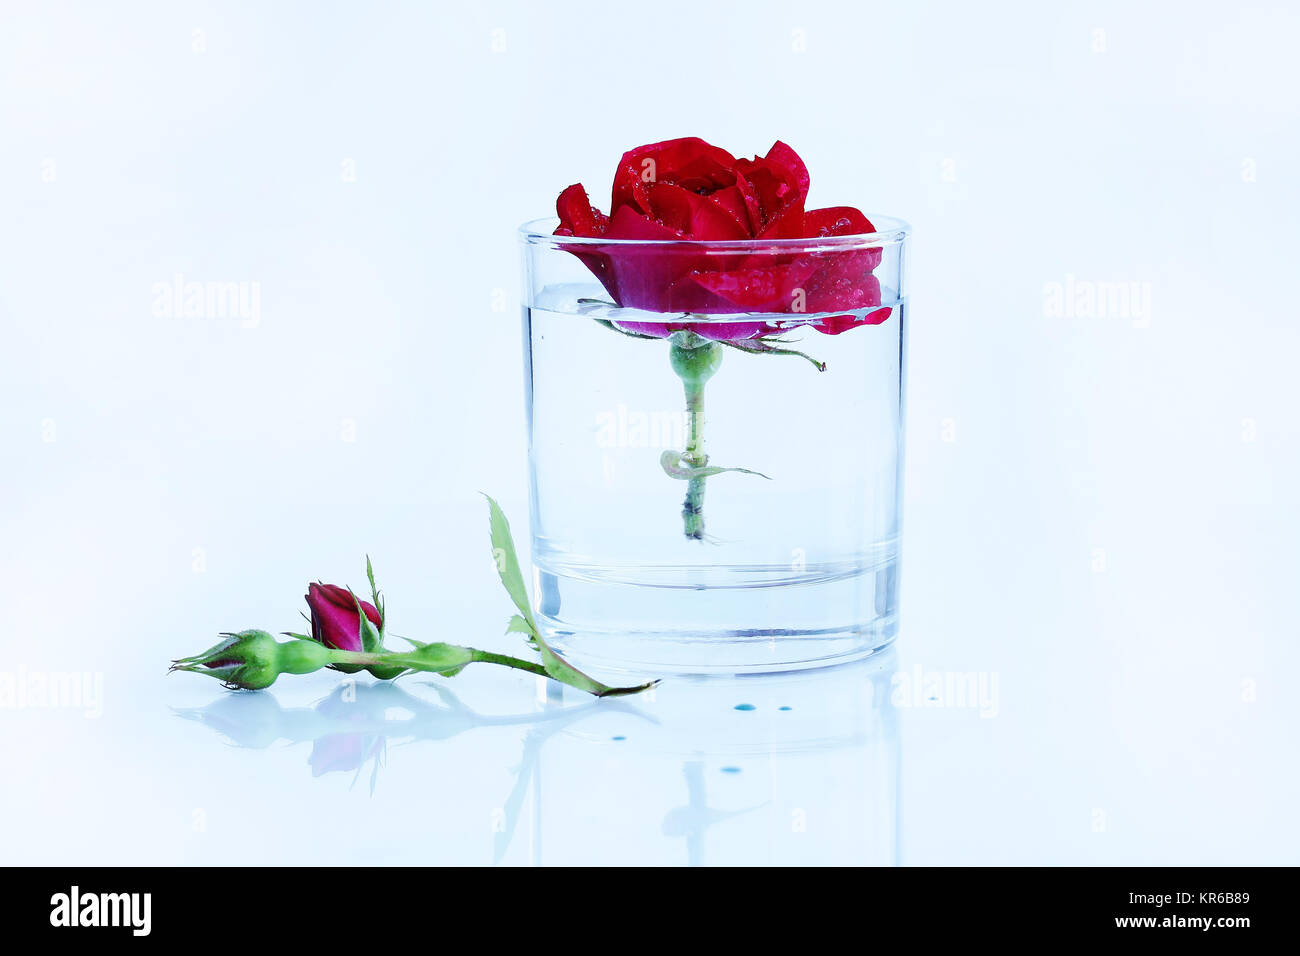 Nettoyer m,l'eau claire avec une rose rouge Banque D'Images